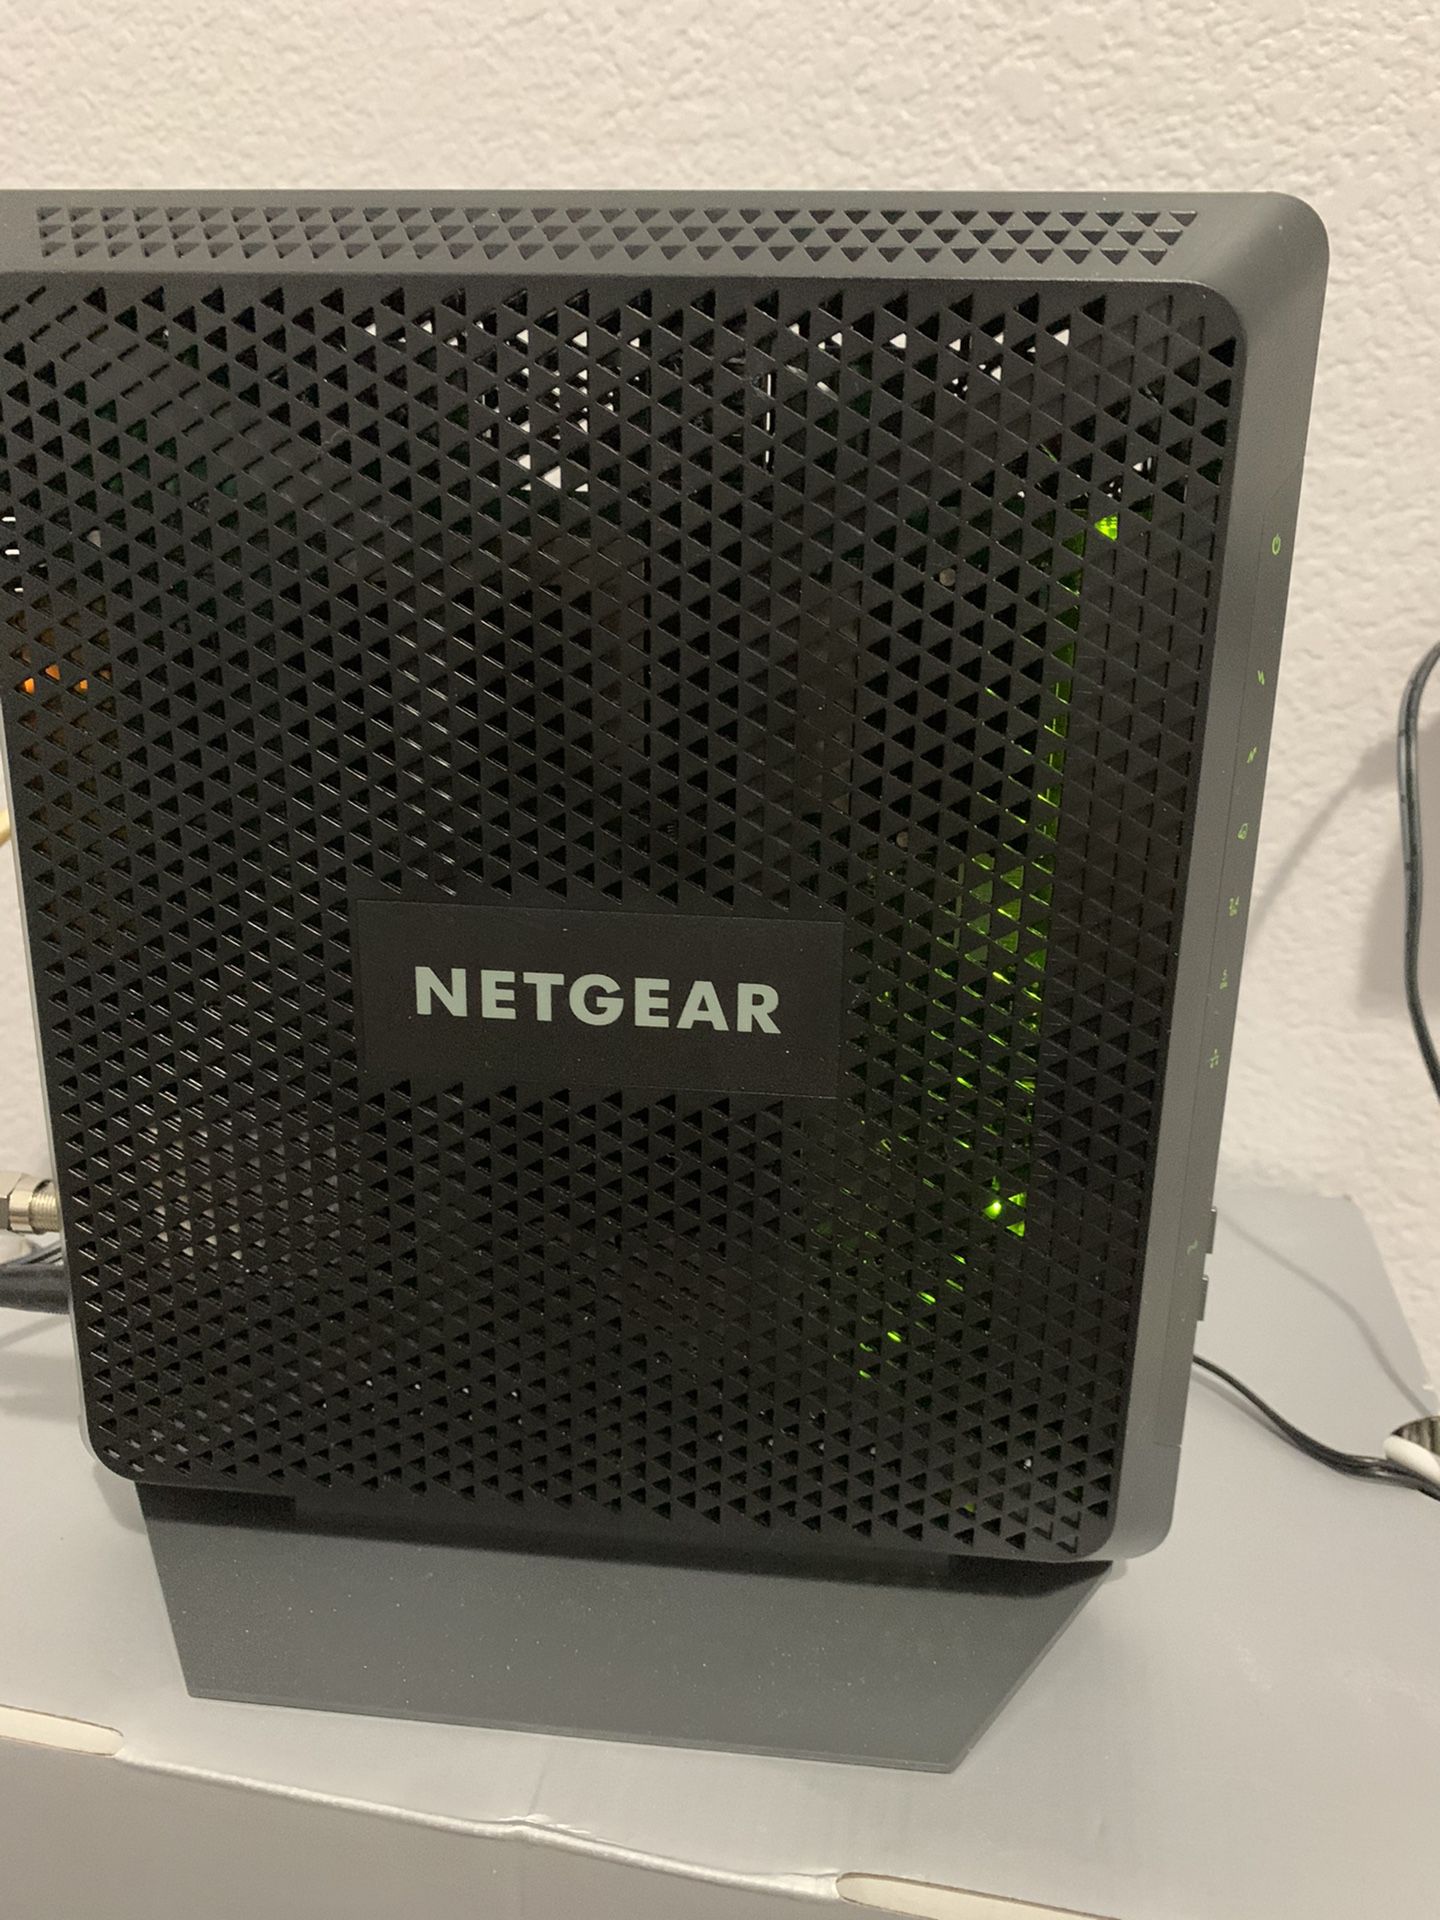 NETGEAR modem router c7000v2